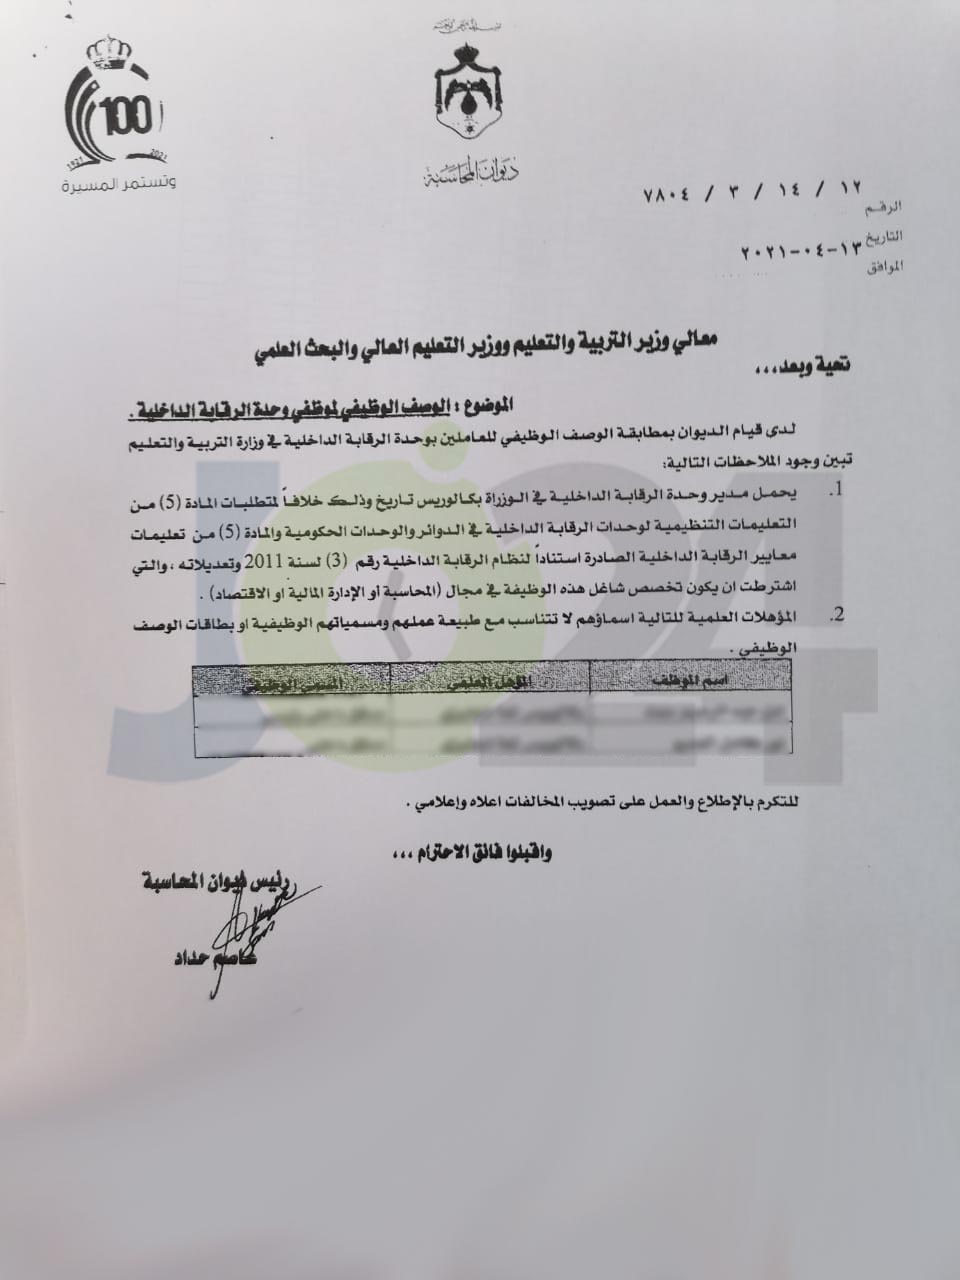 ديوان المحاسبة يخاطب وزير التربية بخصوص مخالفات في الوزارة - وثائق